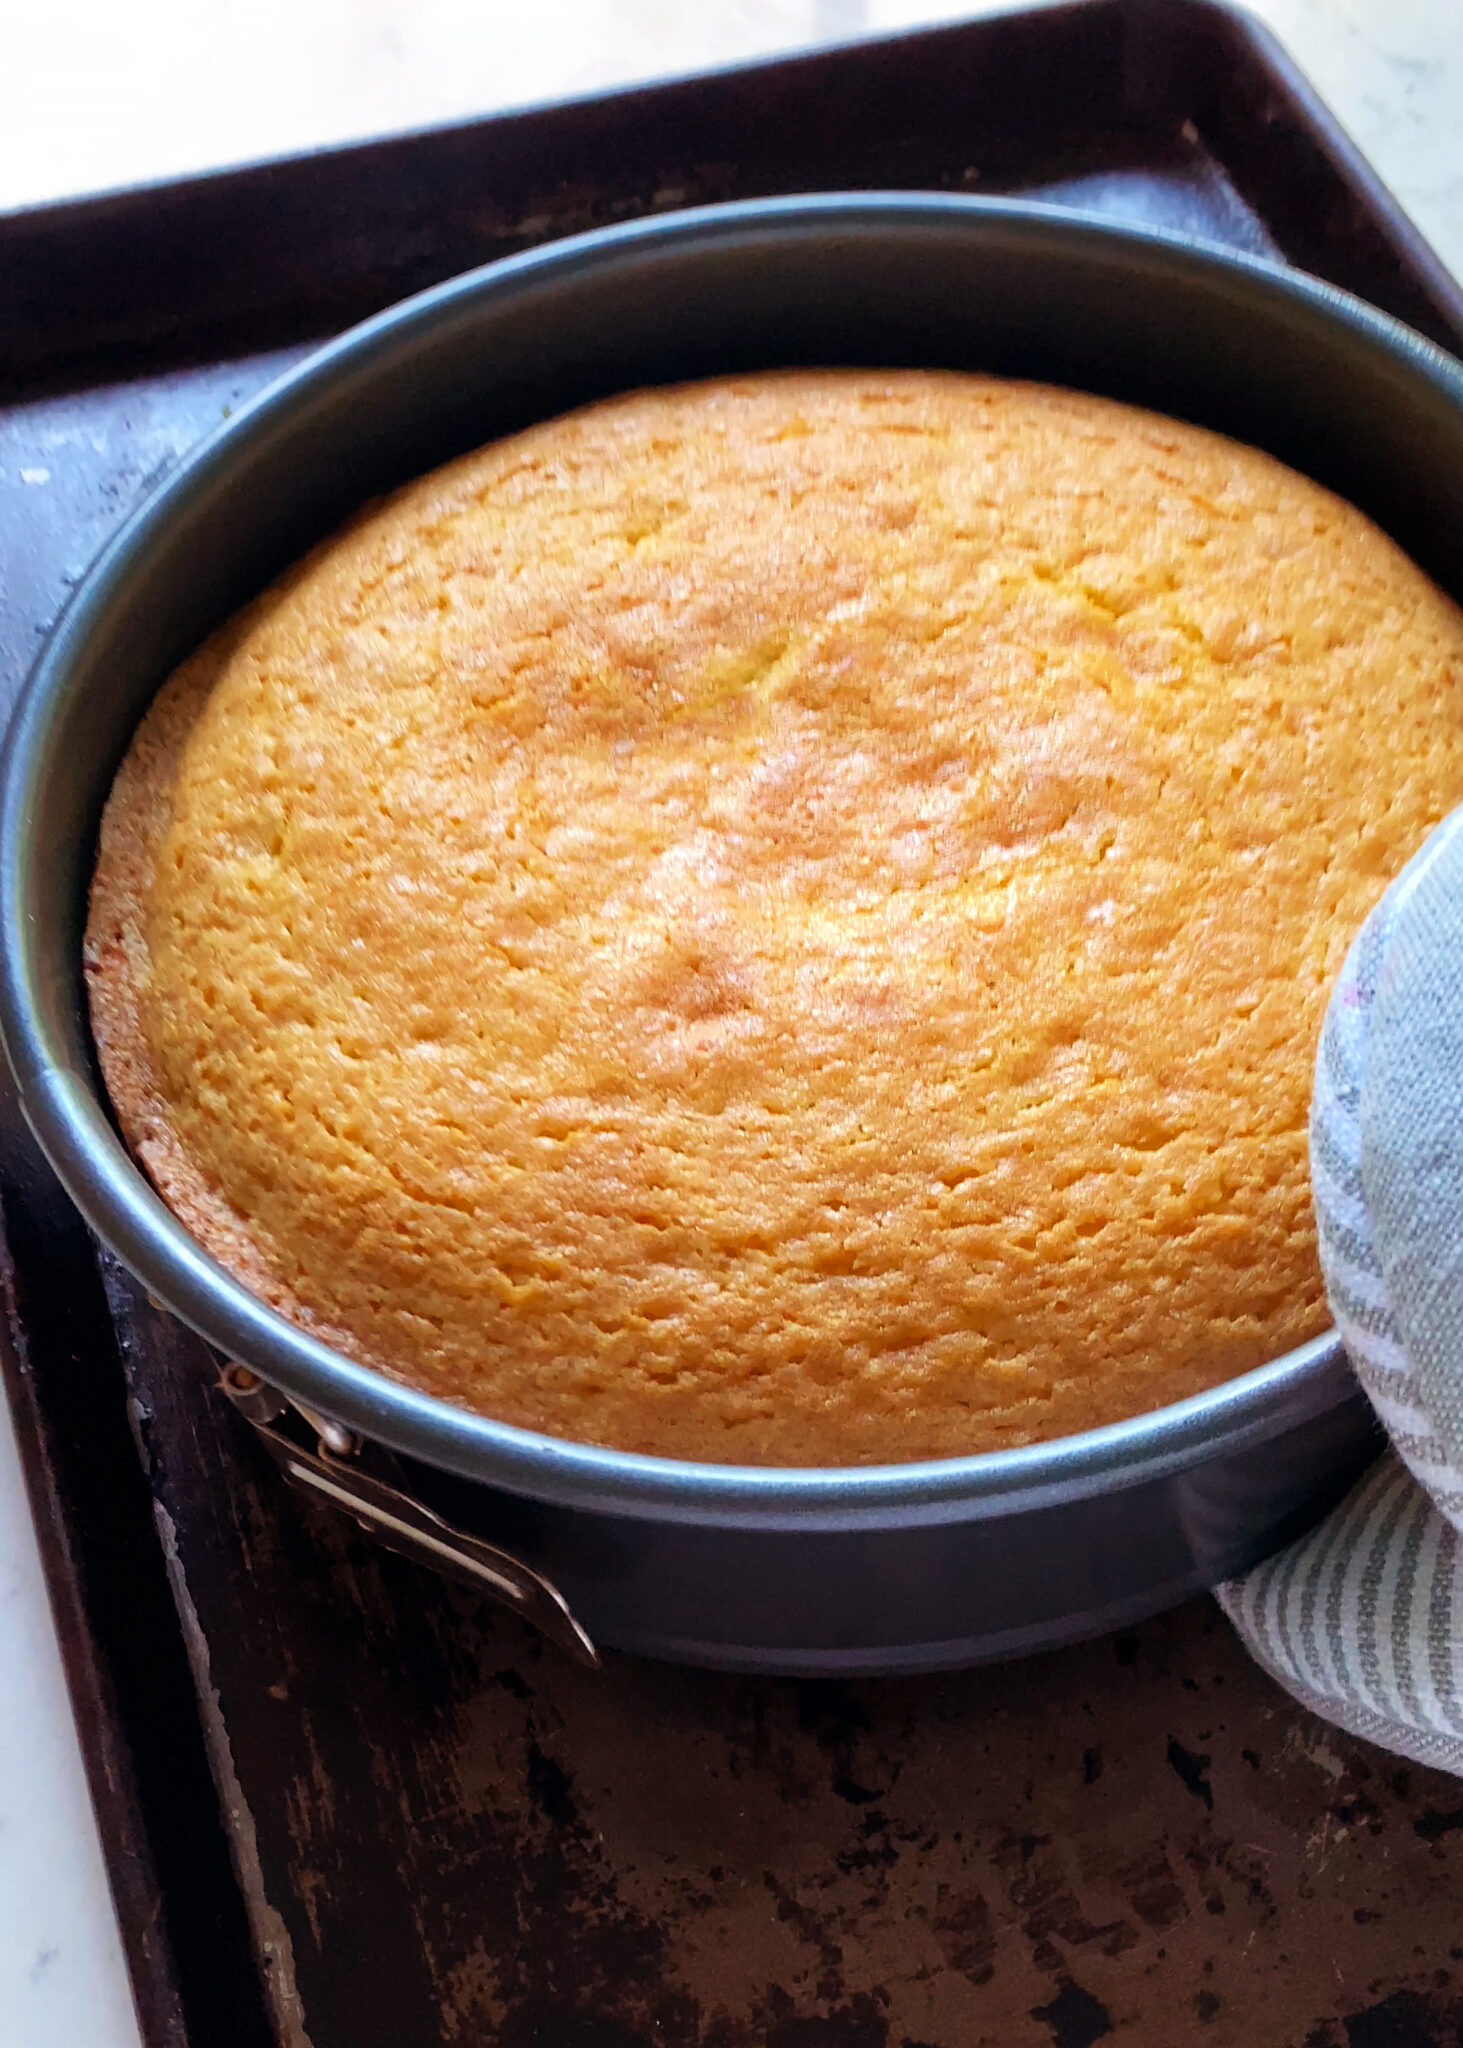 orange olive oil cake, baked in springform pan